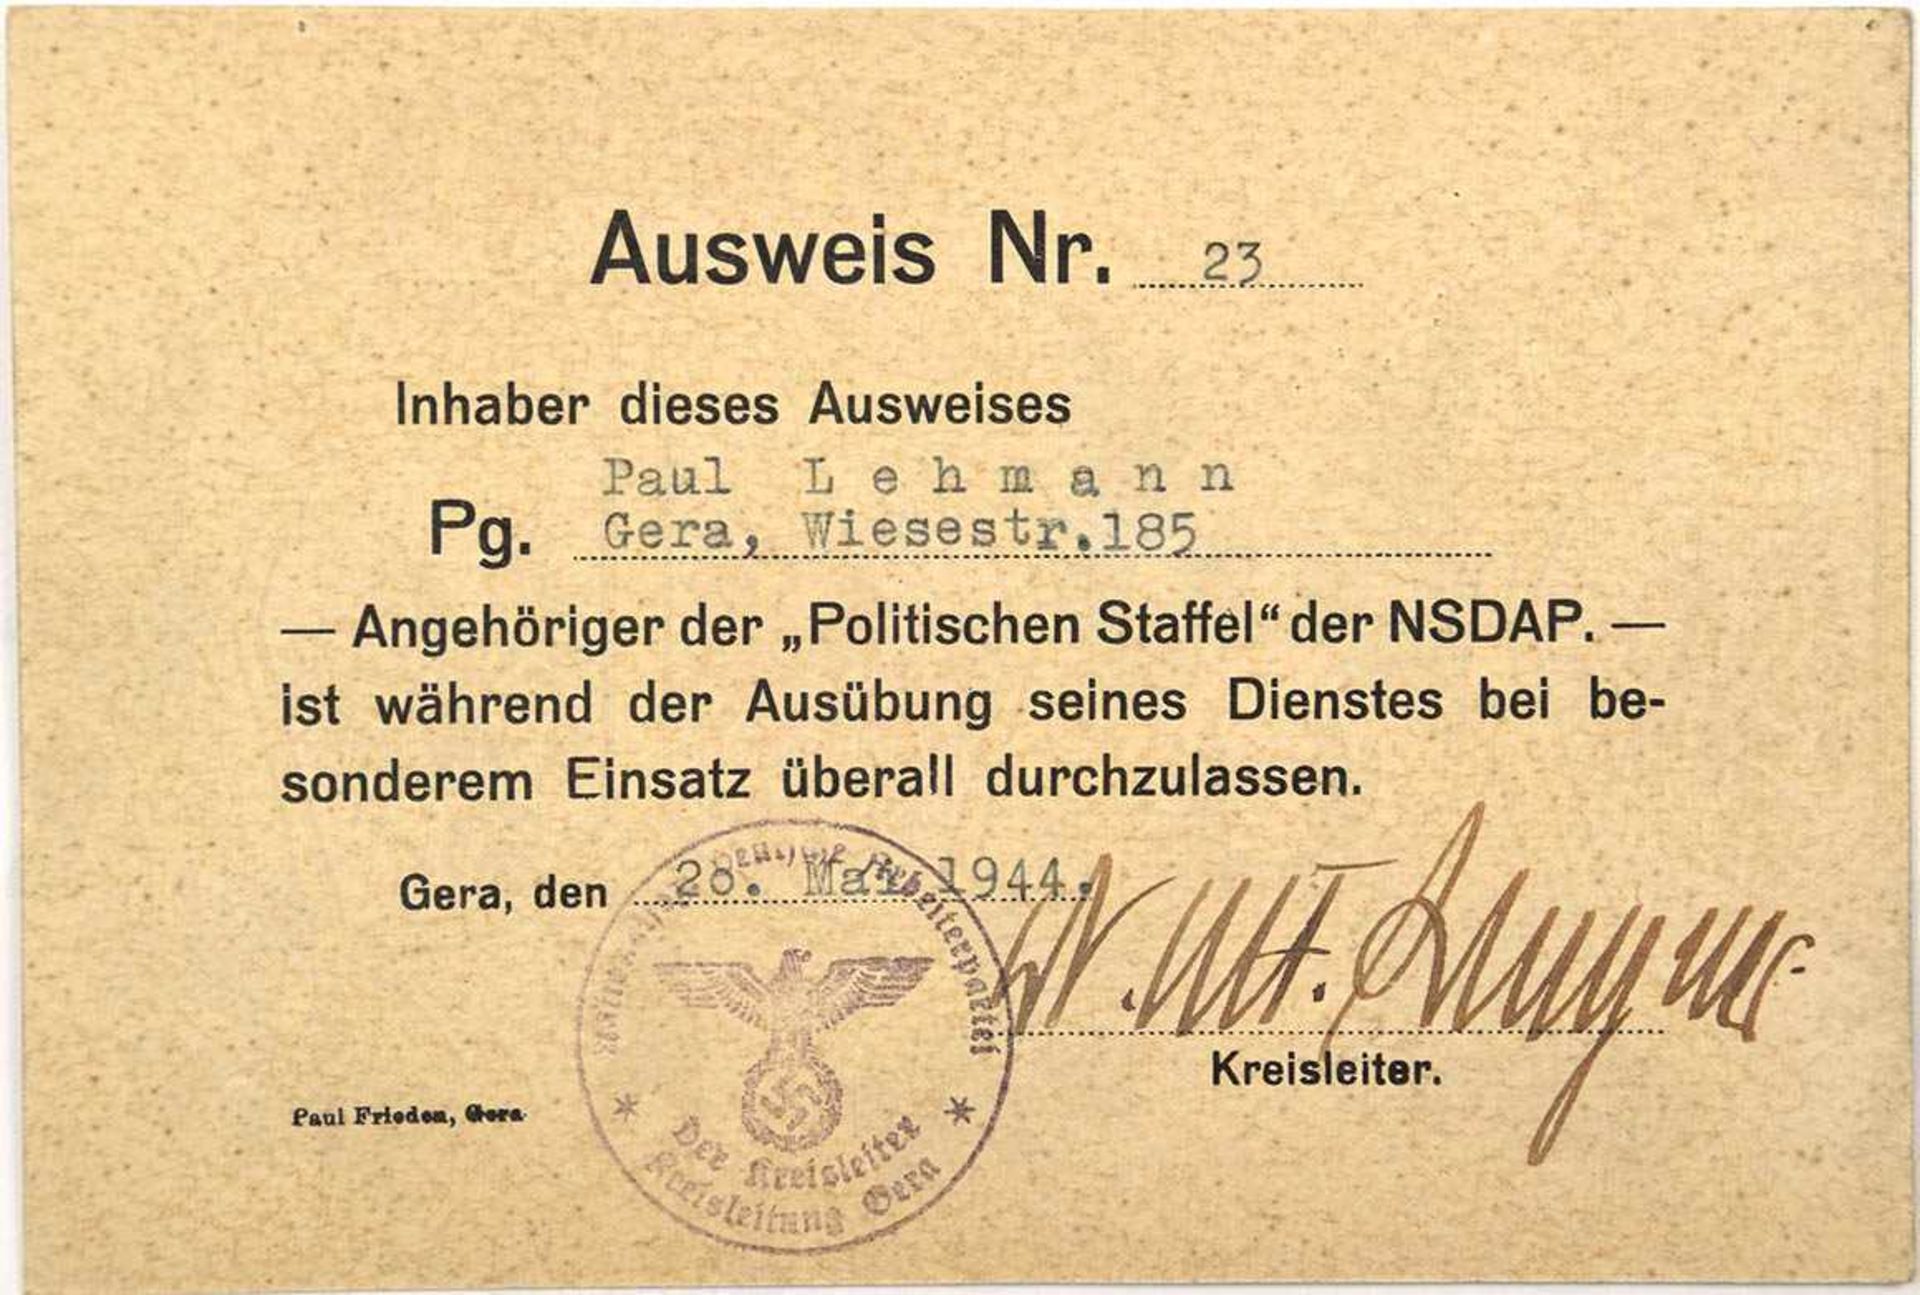 AUSWEISKARTE, e. Angehörigen d. „Politischen Staffel“ d. NSDAP, Gera, 28. 5. 1944, berechtigt z.